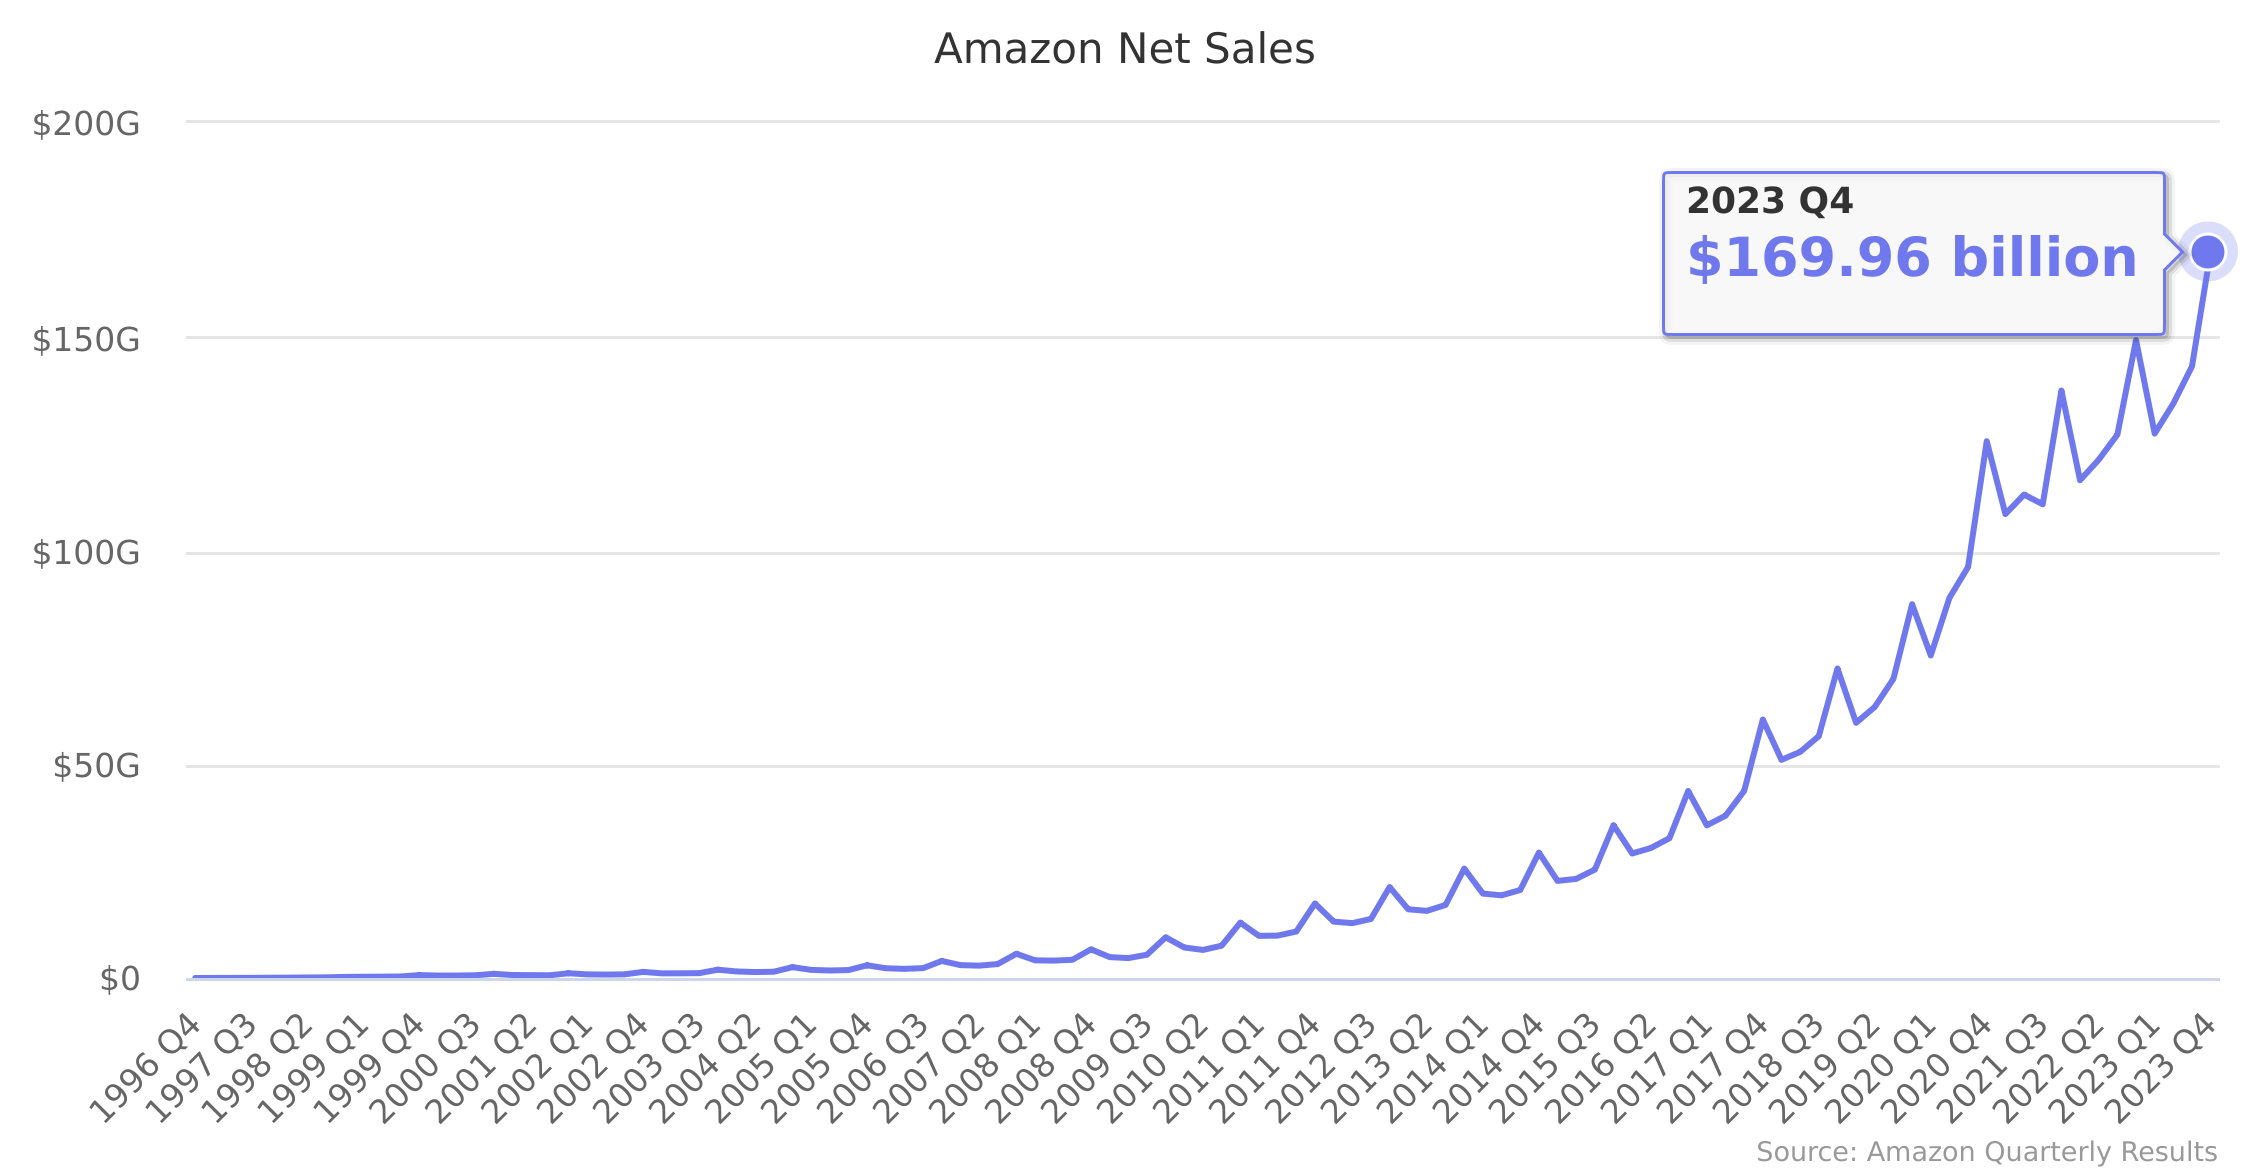 Amazon Net Sales 1996-2022